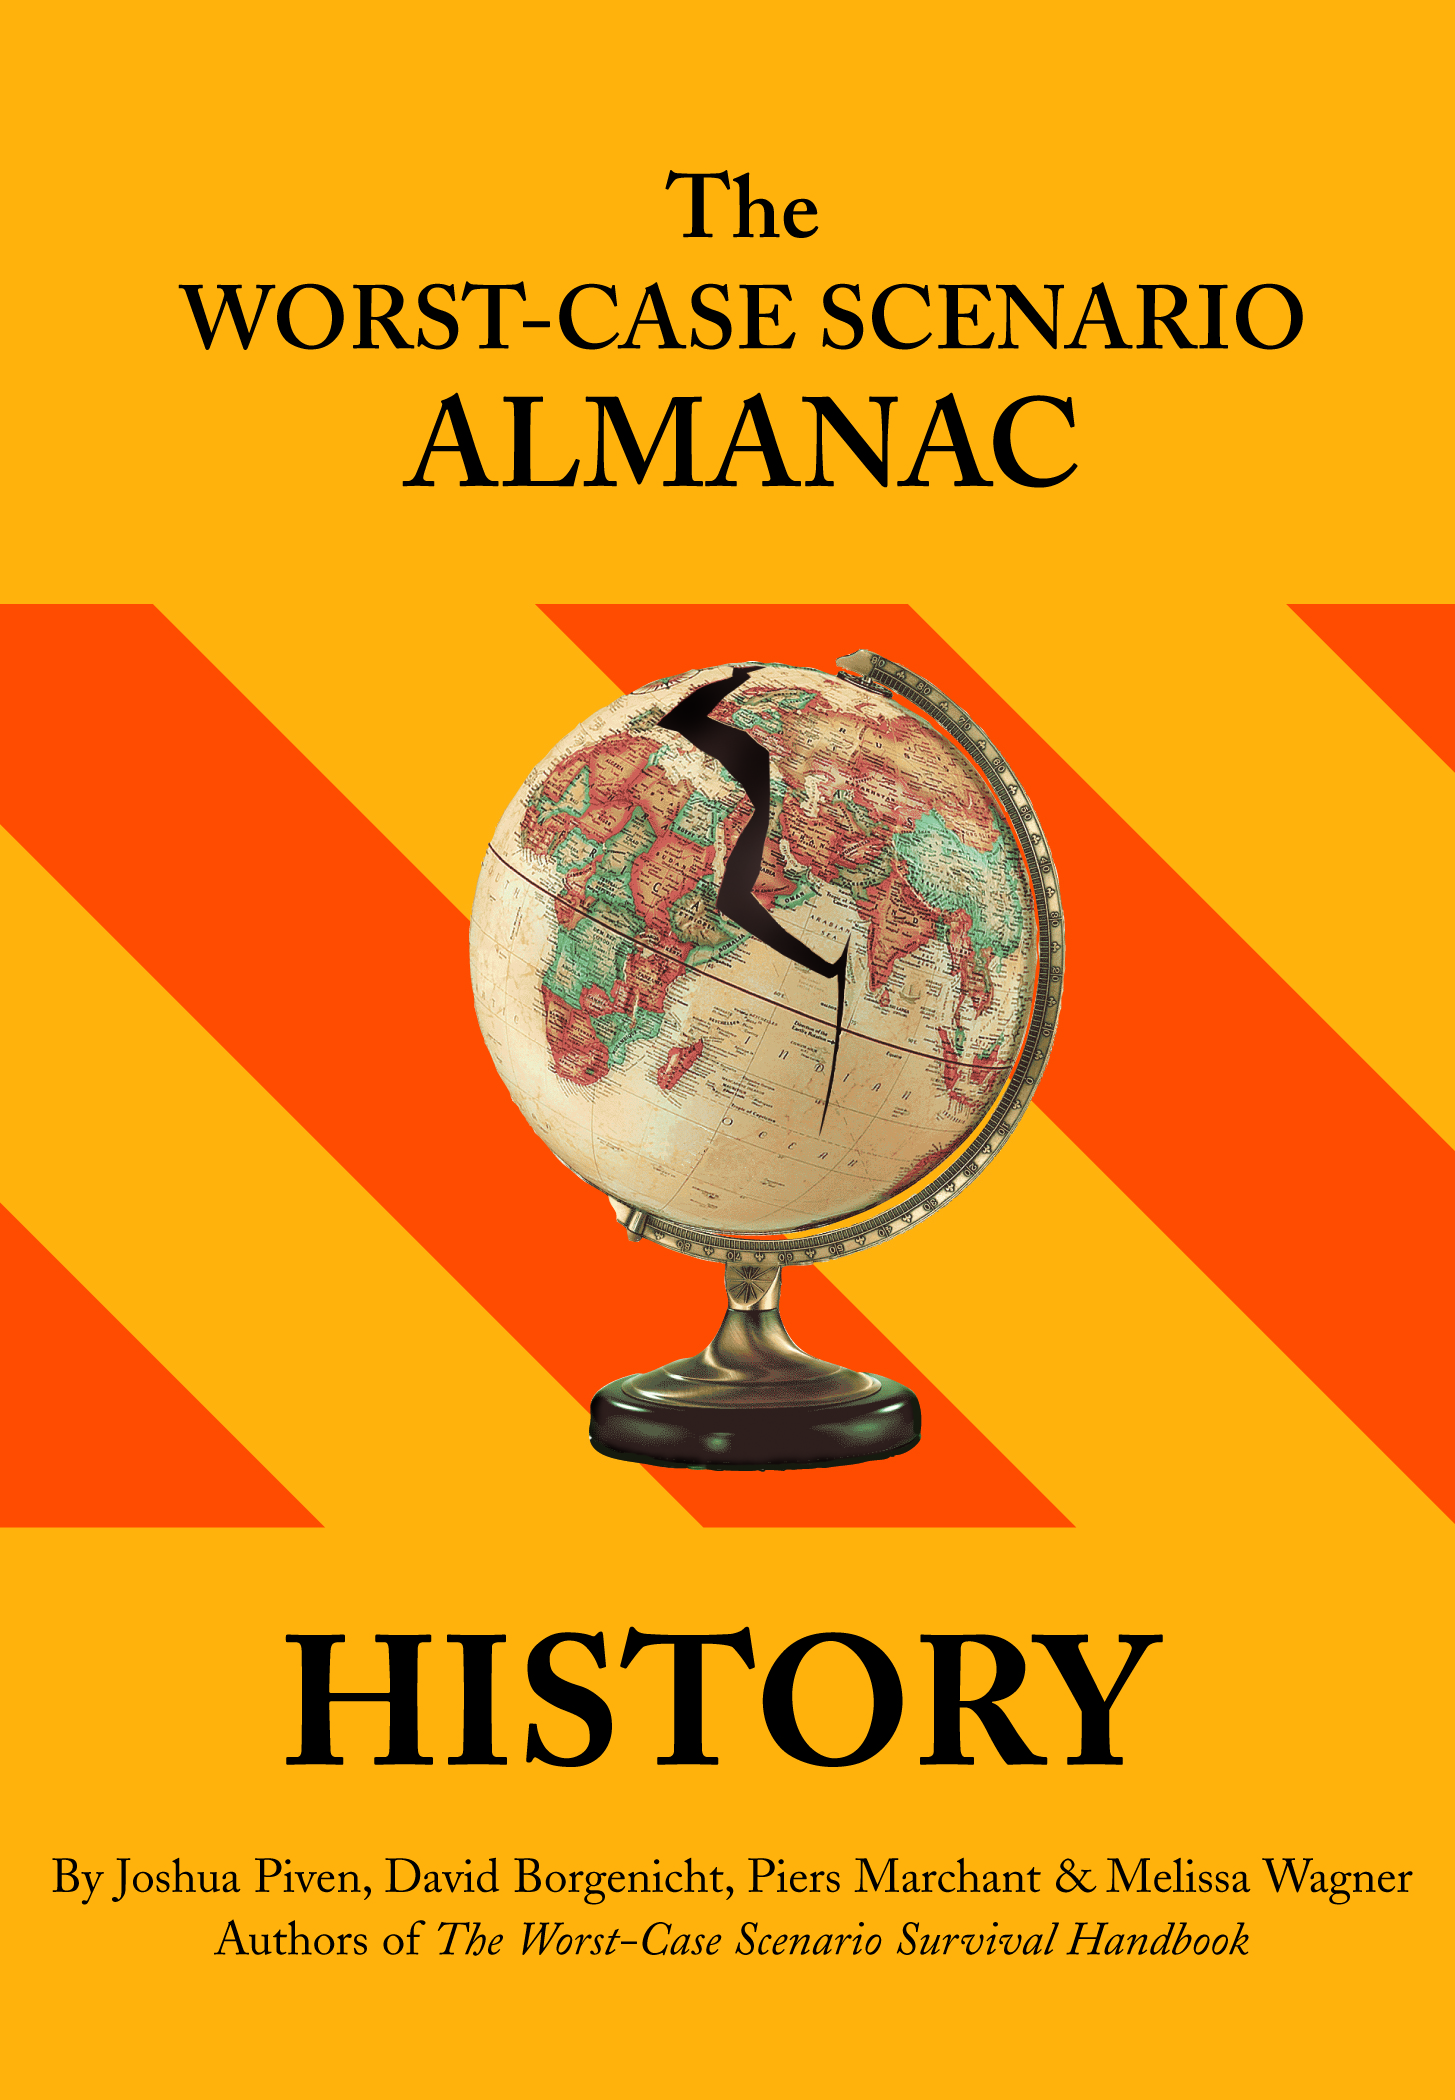 The Worst-Case Scenario Survival Almanac: History